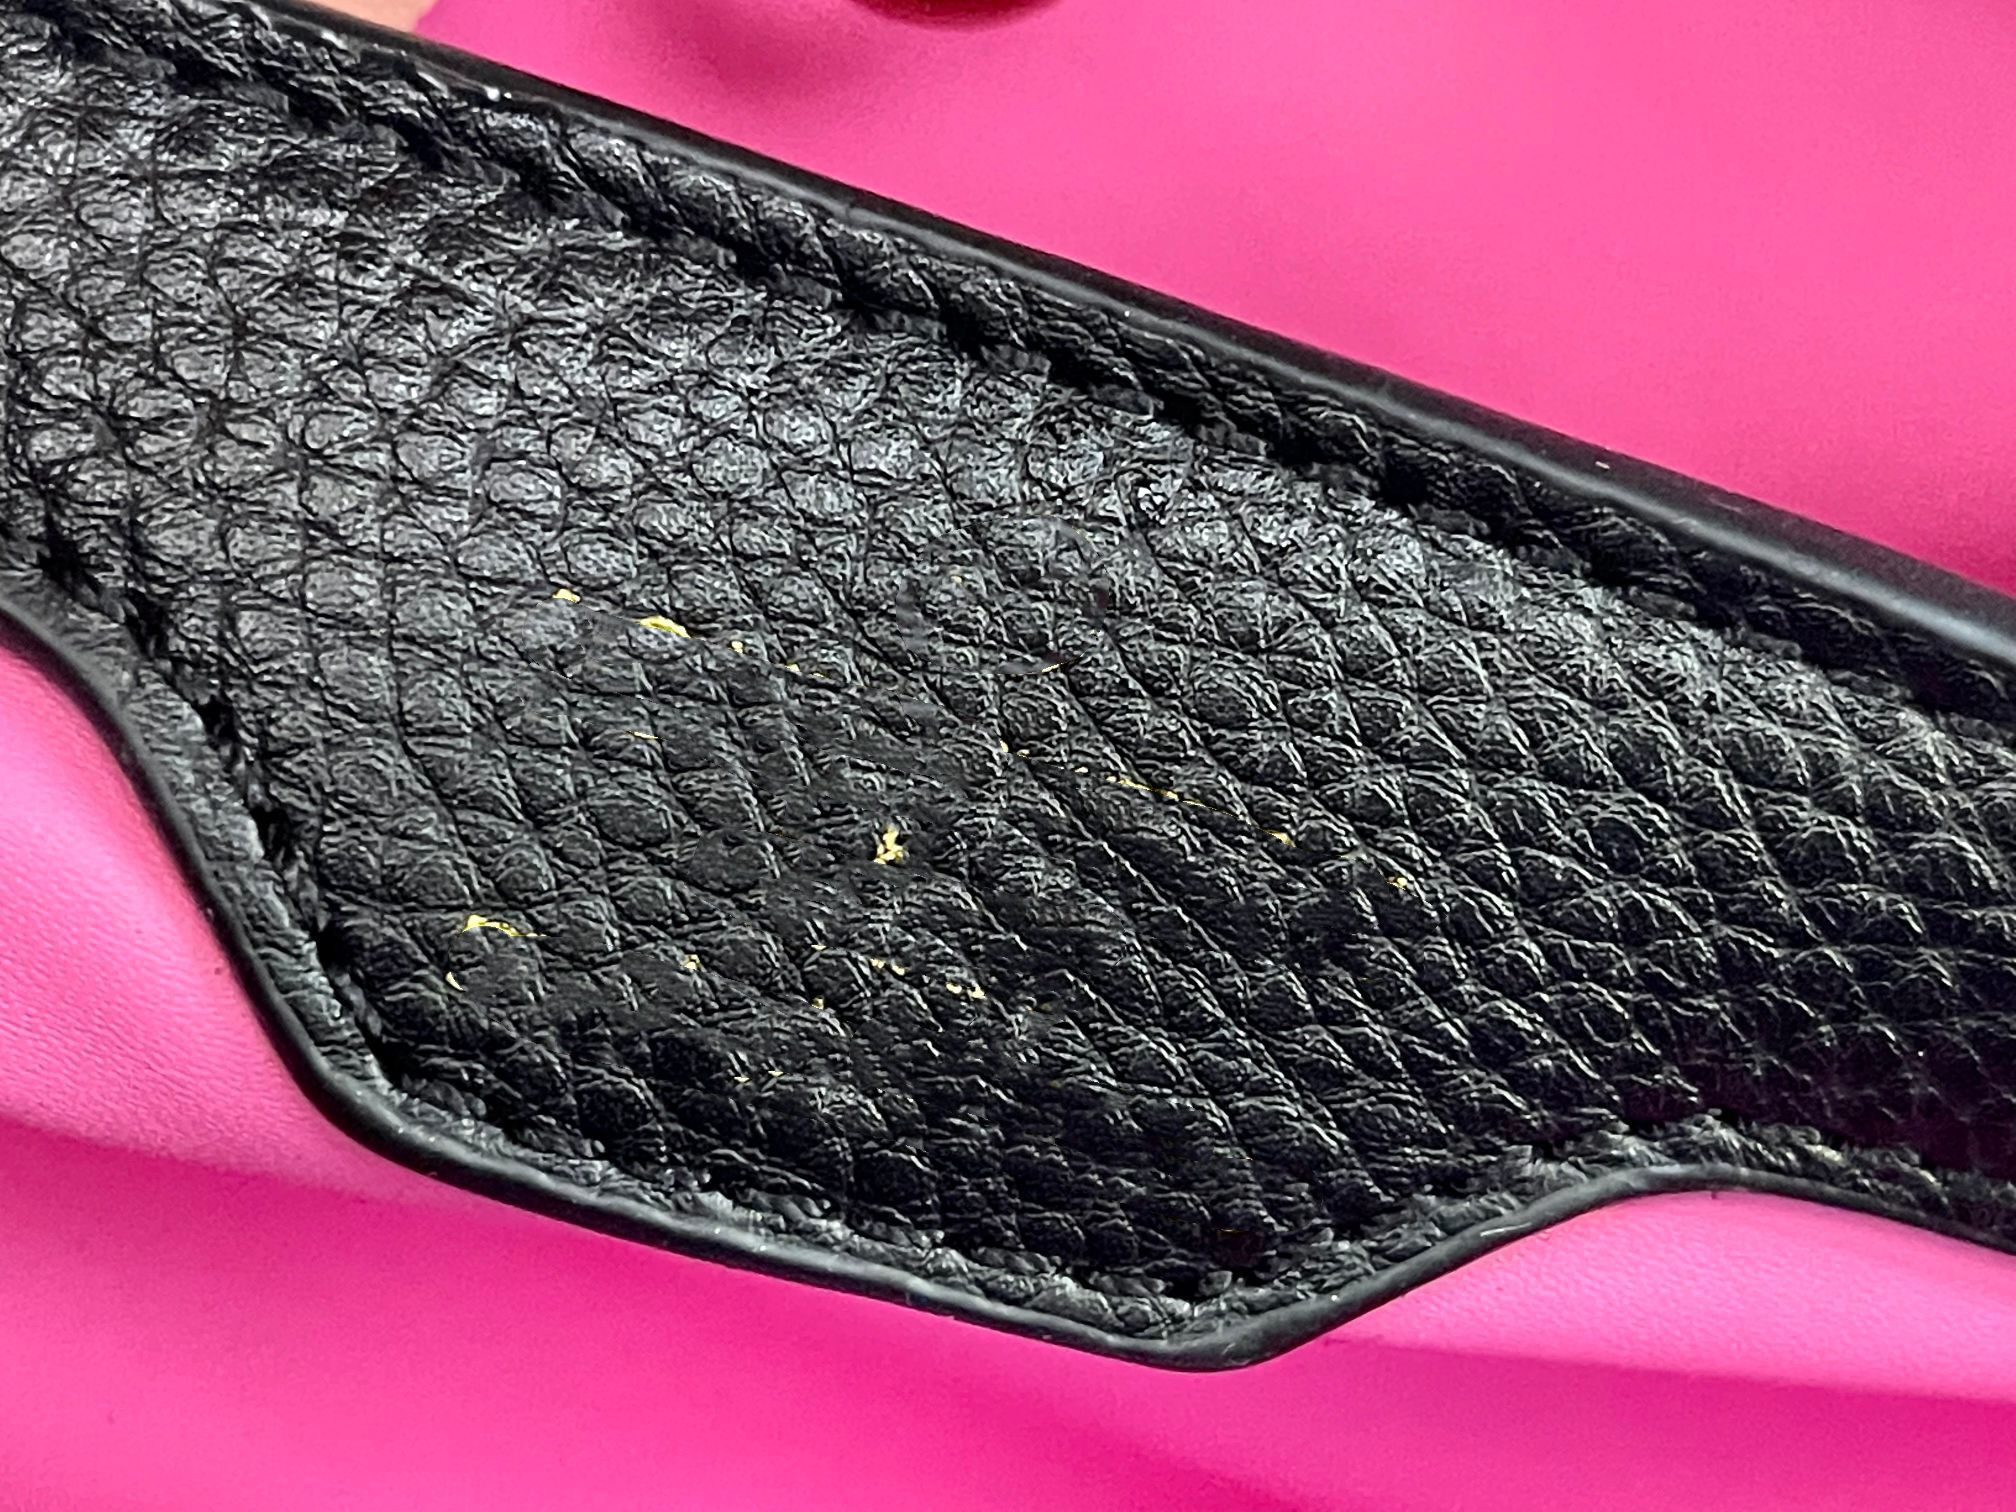 10A Luxurys Designer -Tasche Damen Kapitalbeutel echte Leder -Crossbody -Taschen Einkaufstaschen Umhängetaschen Handtaschen Brieftaschen Einkaufstasche Rucksack Schwarz Schwarz